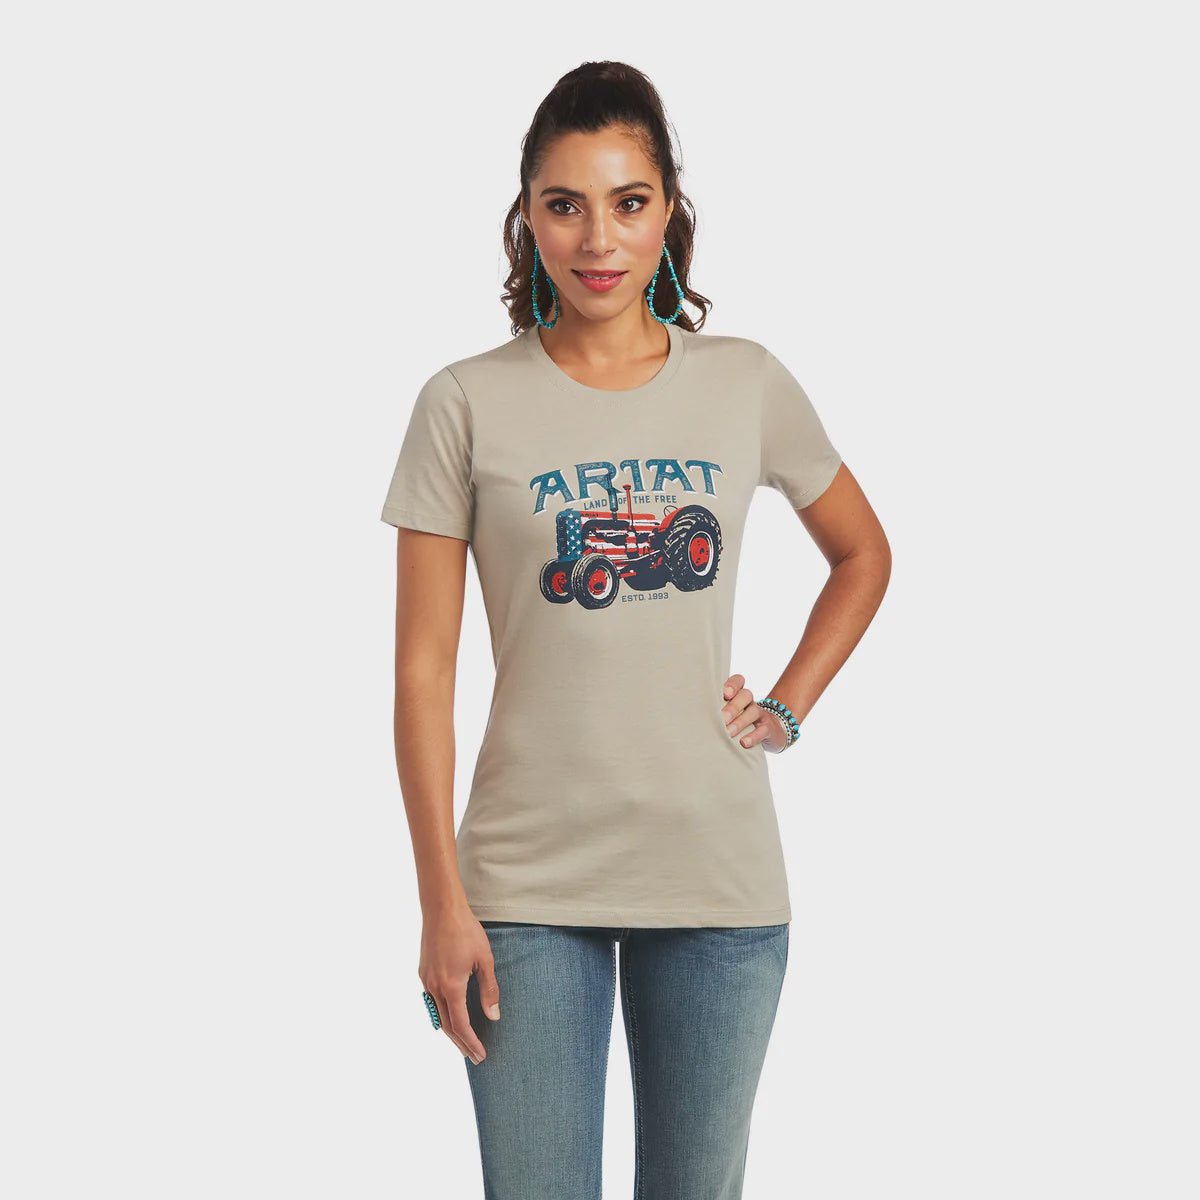 Ariat Women's Fishing Shirt - Horses